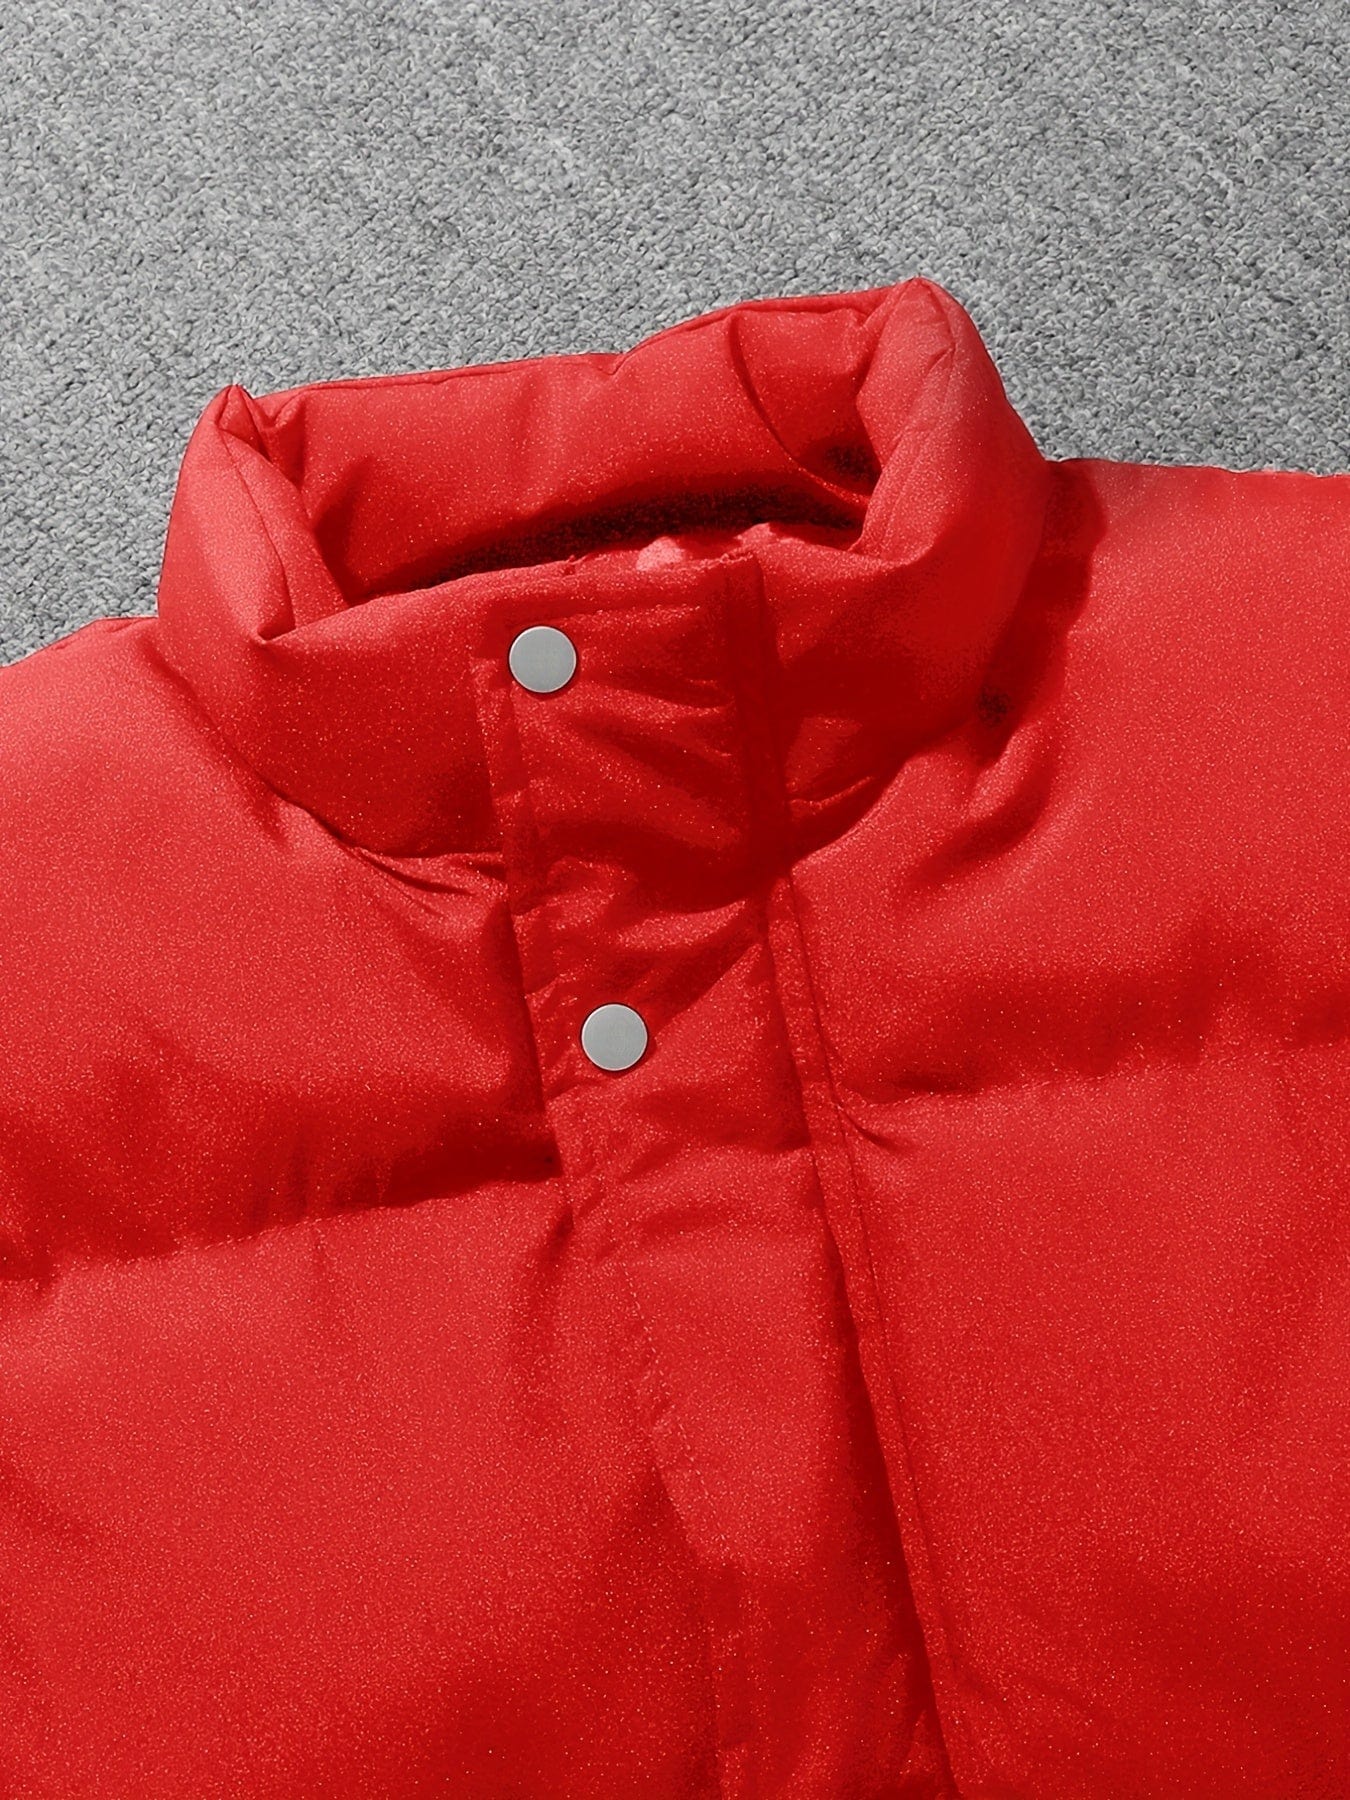 MsDressly Jackets Solid Zipper Sleeveless Winter Warm Vest Jacket